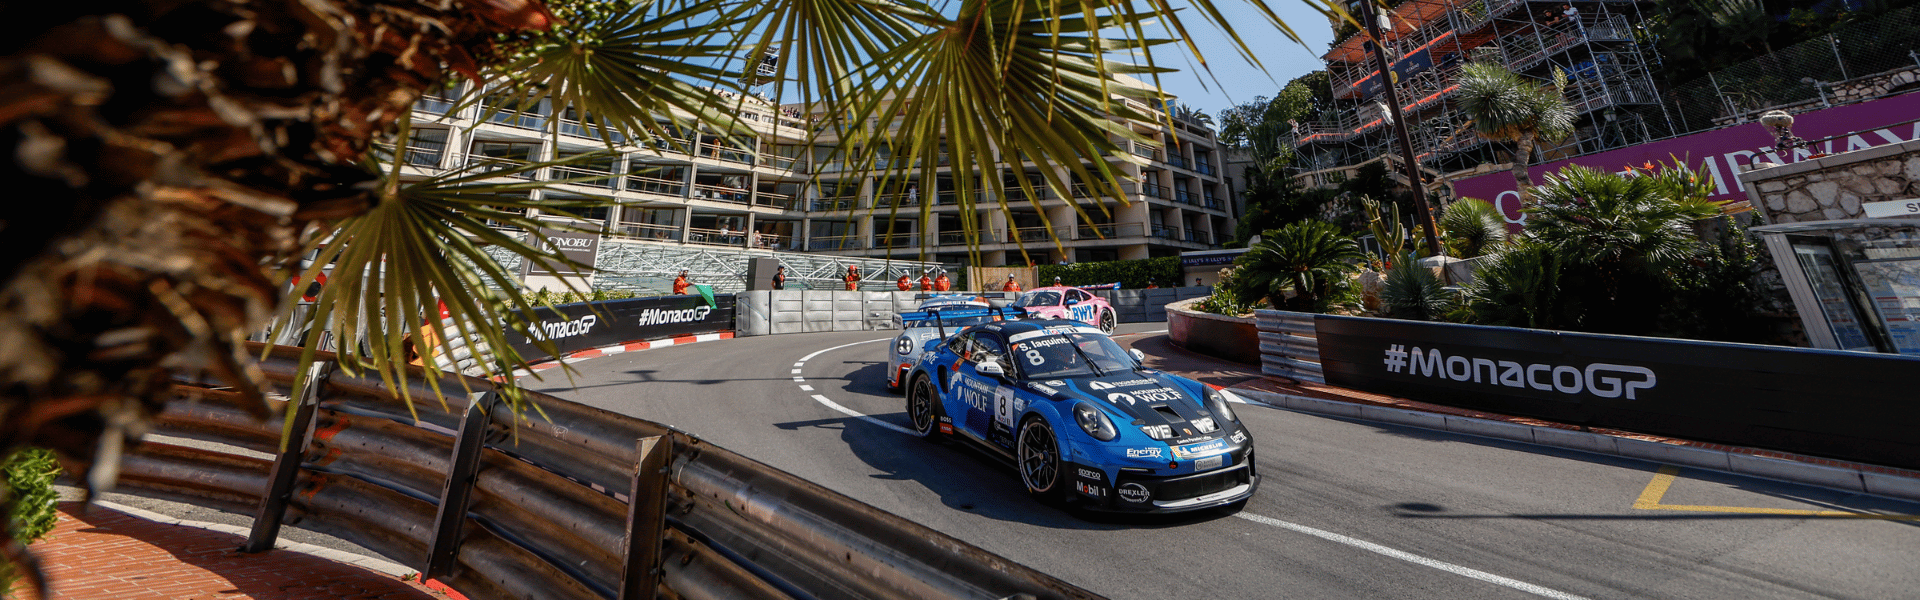 Huber Racing, Mountain Wolf, Porsche Supercup, Monaco